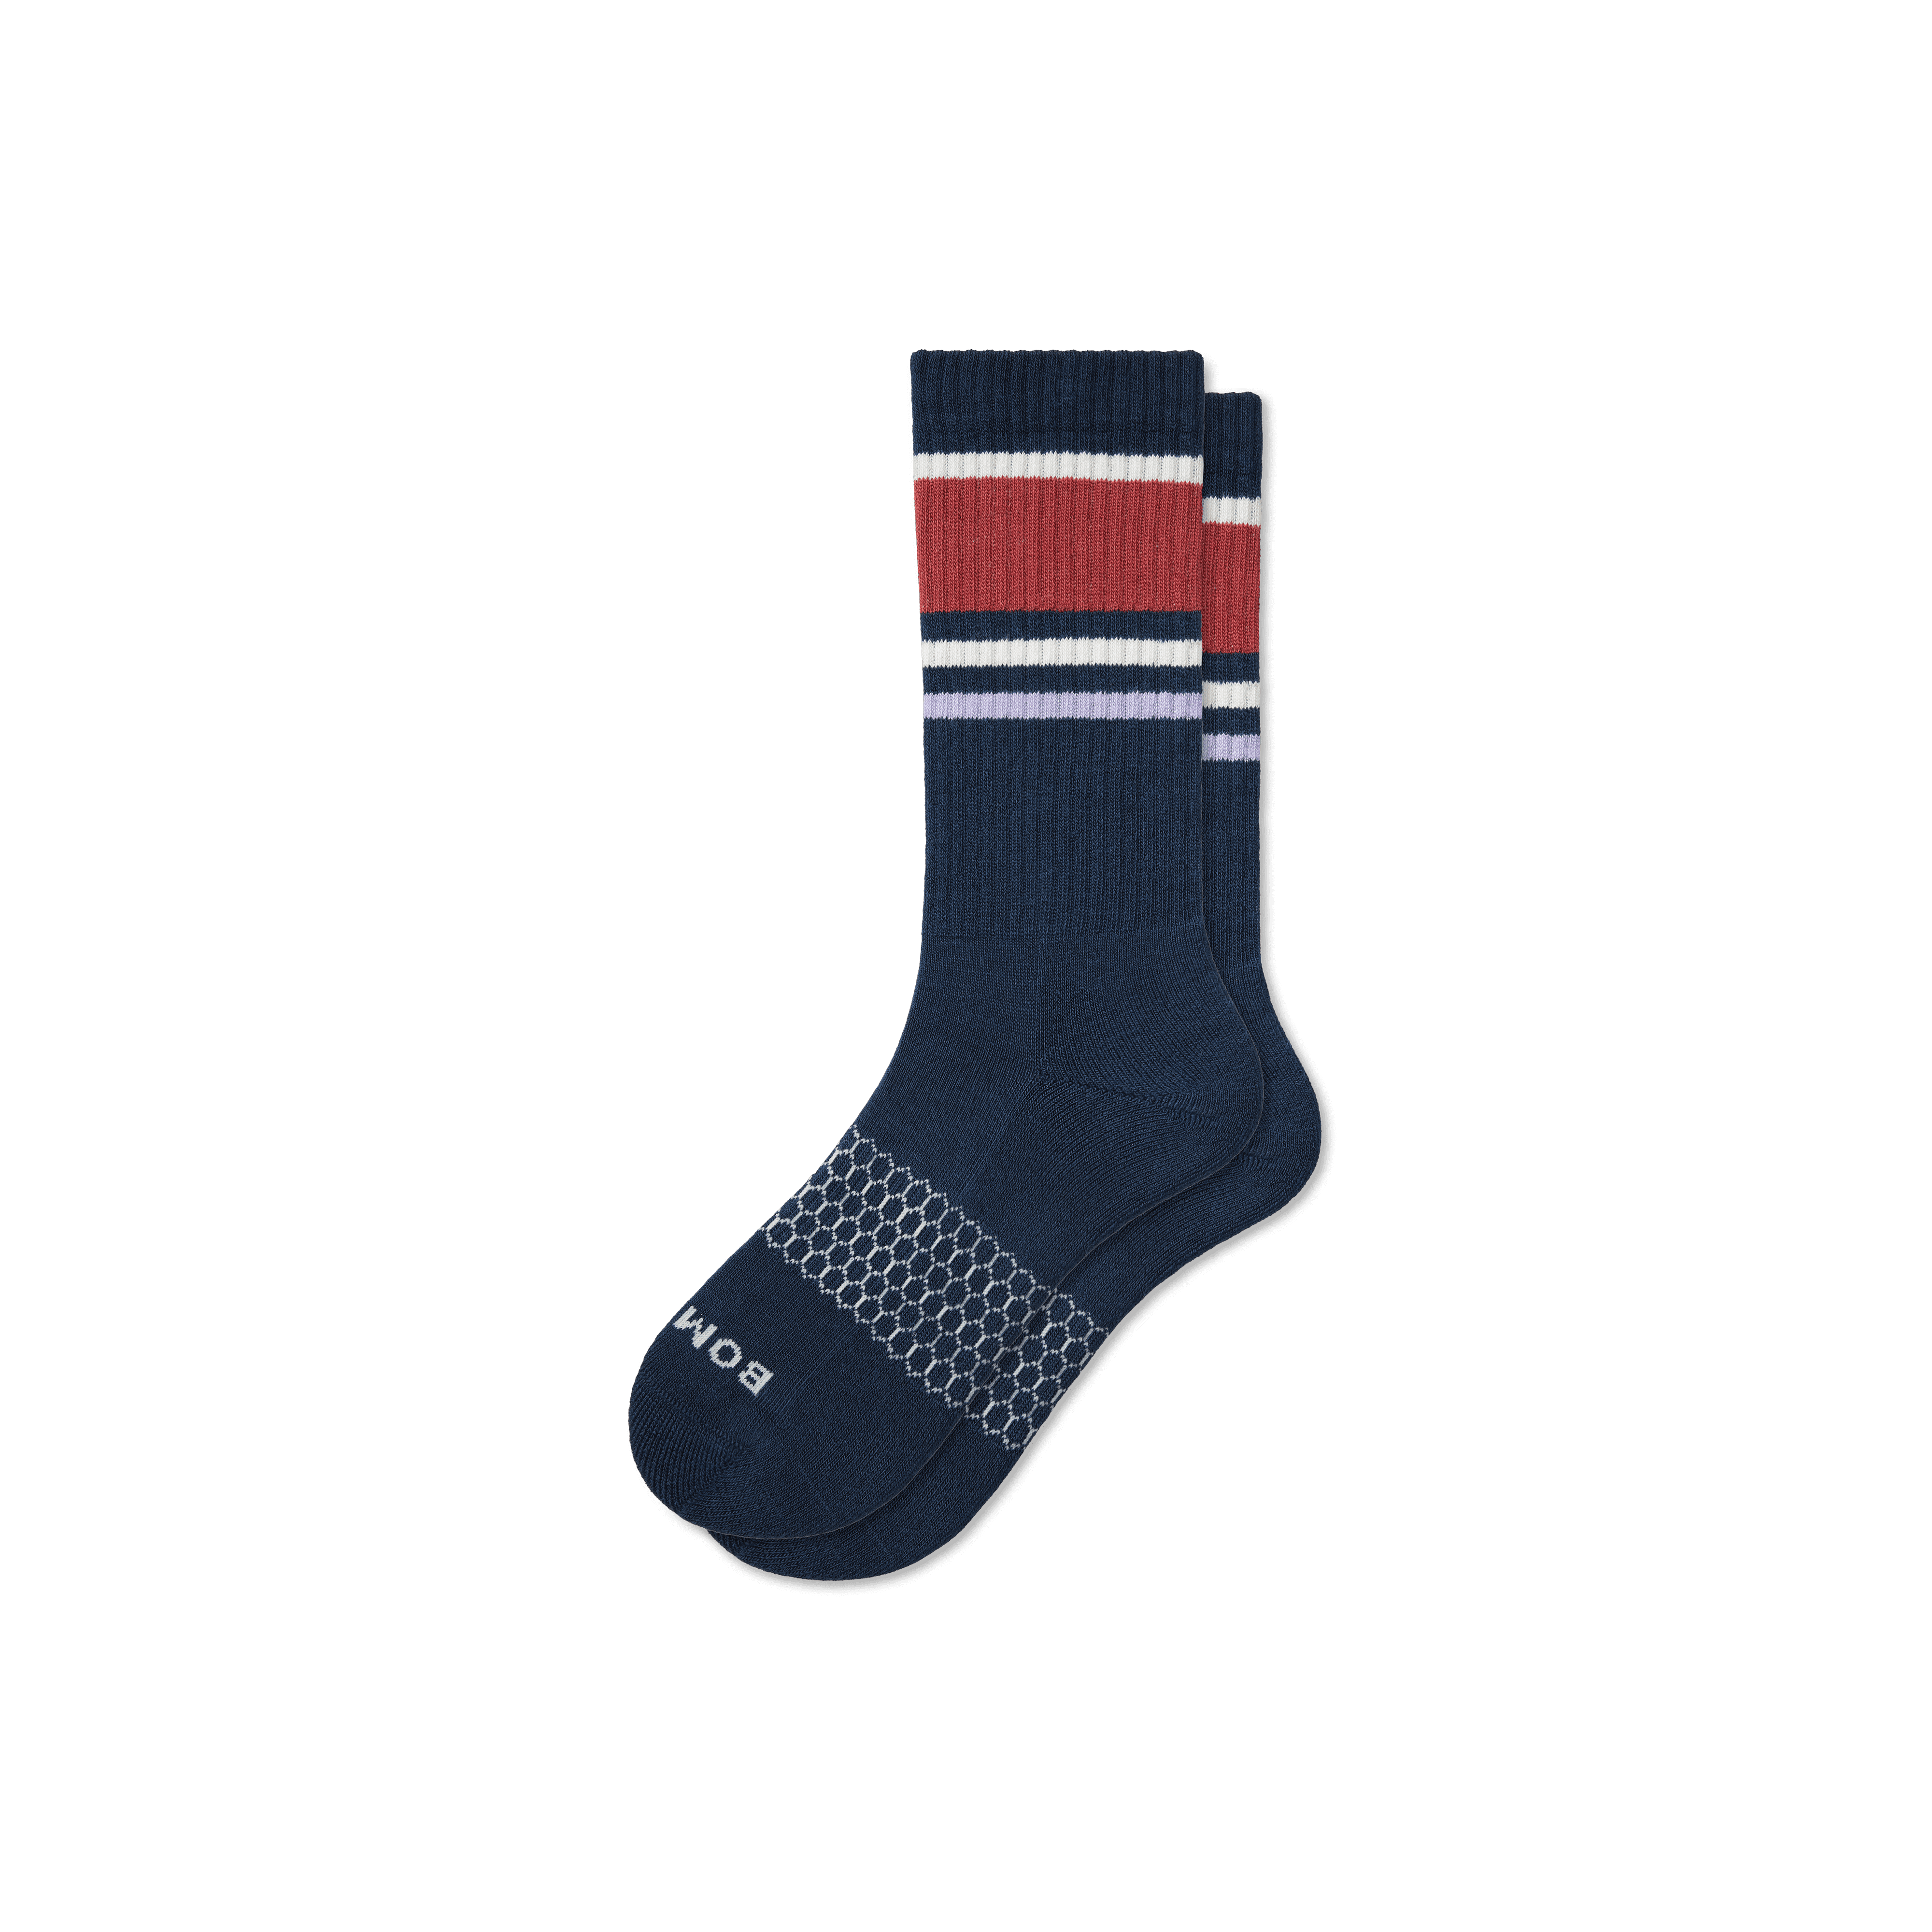 Bombas Stripes Calf Socks In Midnight Navy